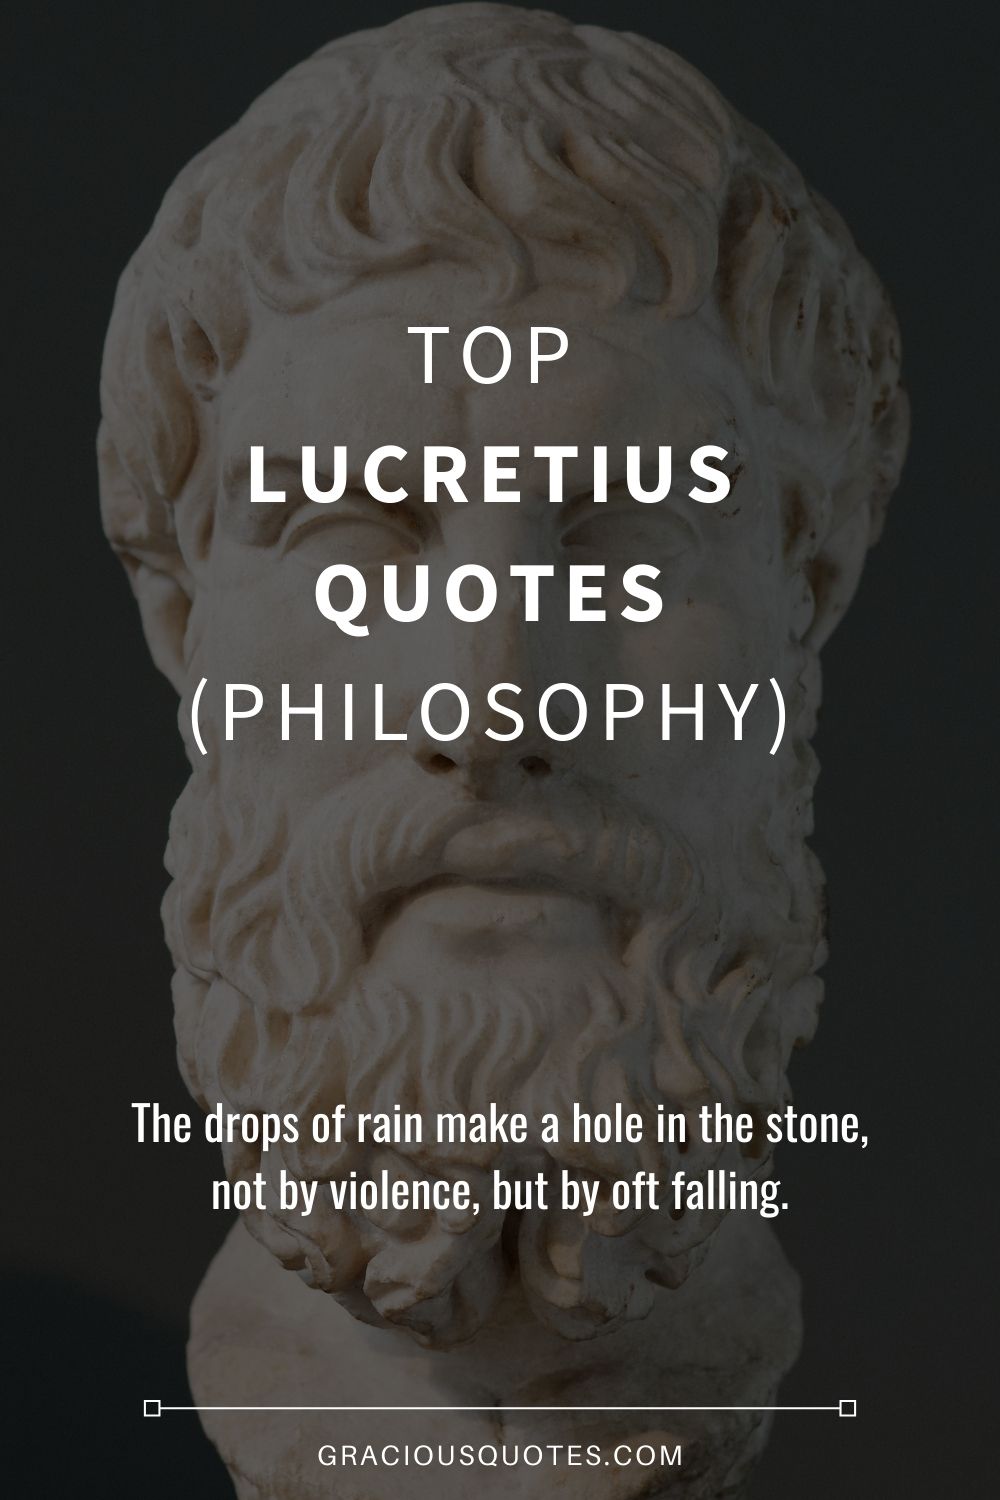 Top Lucretius Quotes (PHILOSOPHY) - Gracious Quotes